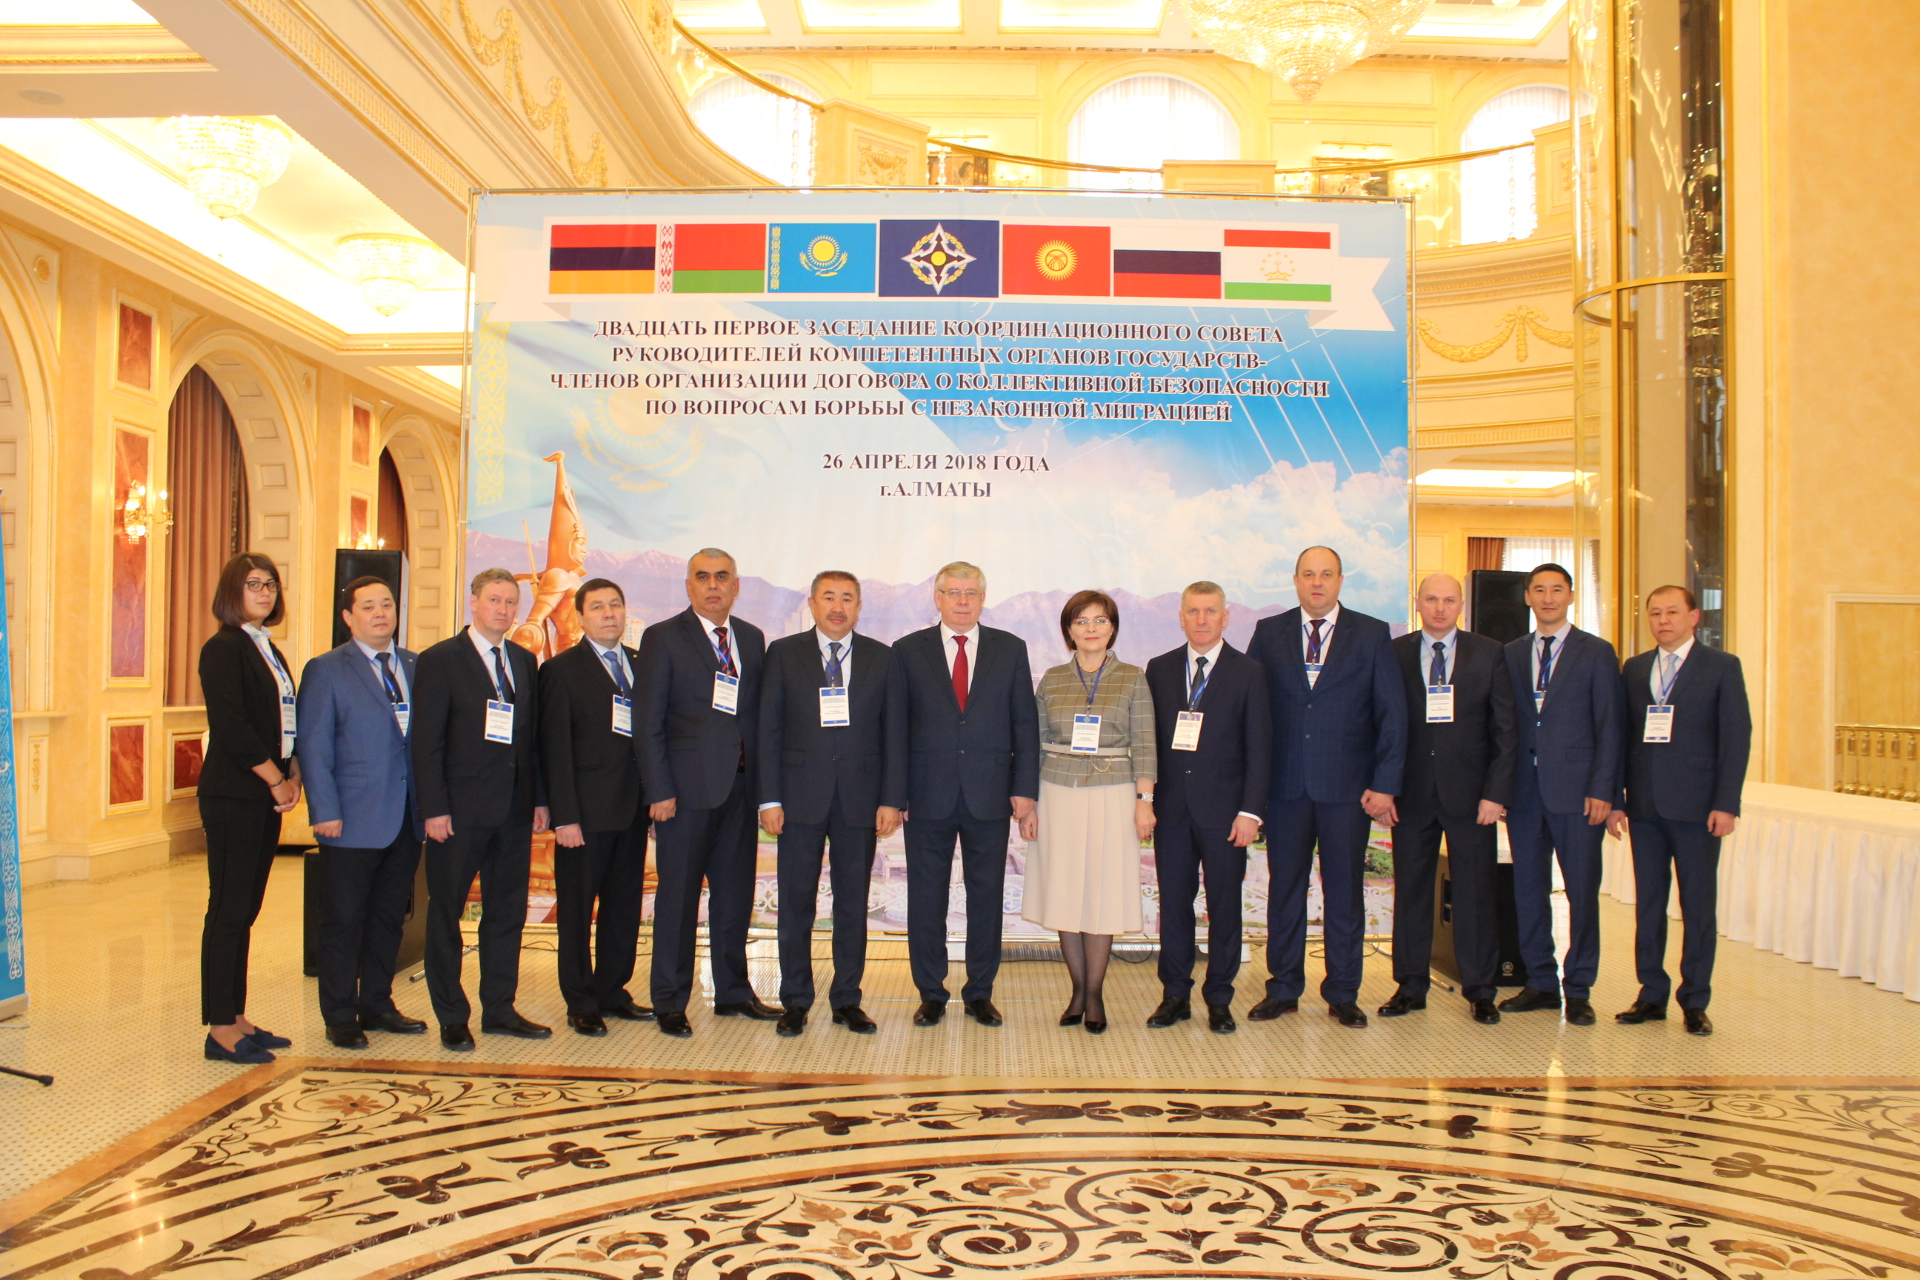 26 апреля 2018 года в Алматы прошло 21-е заседание КСБНМ